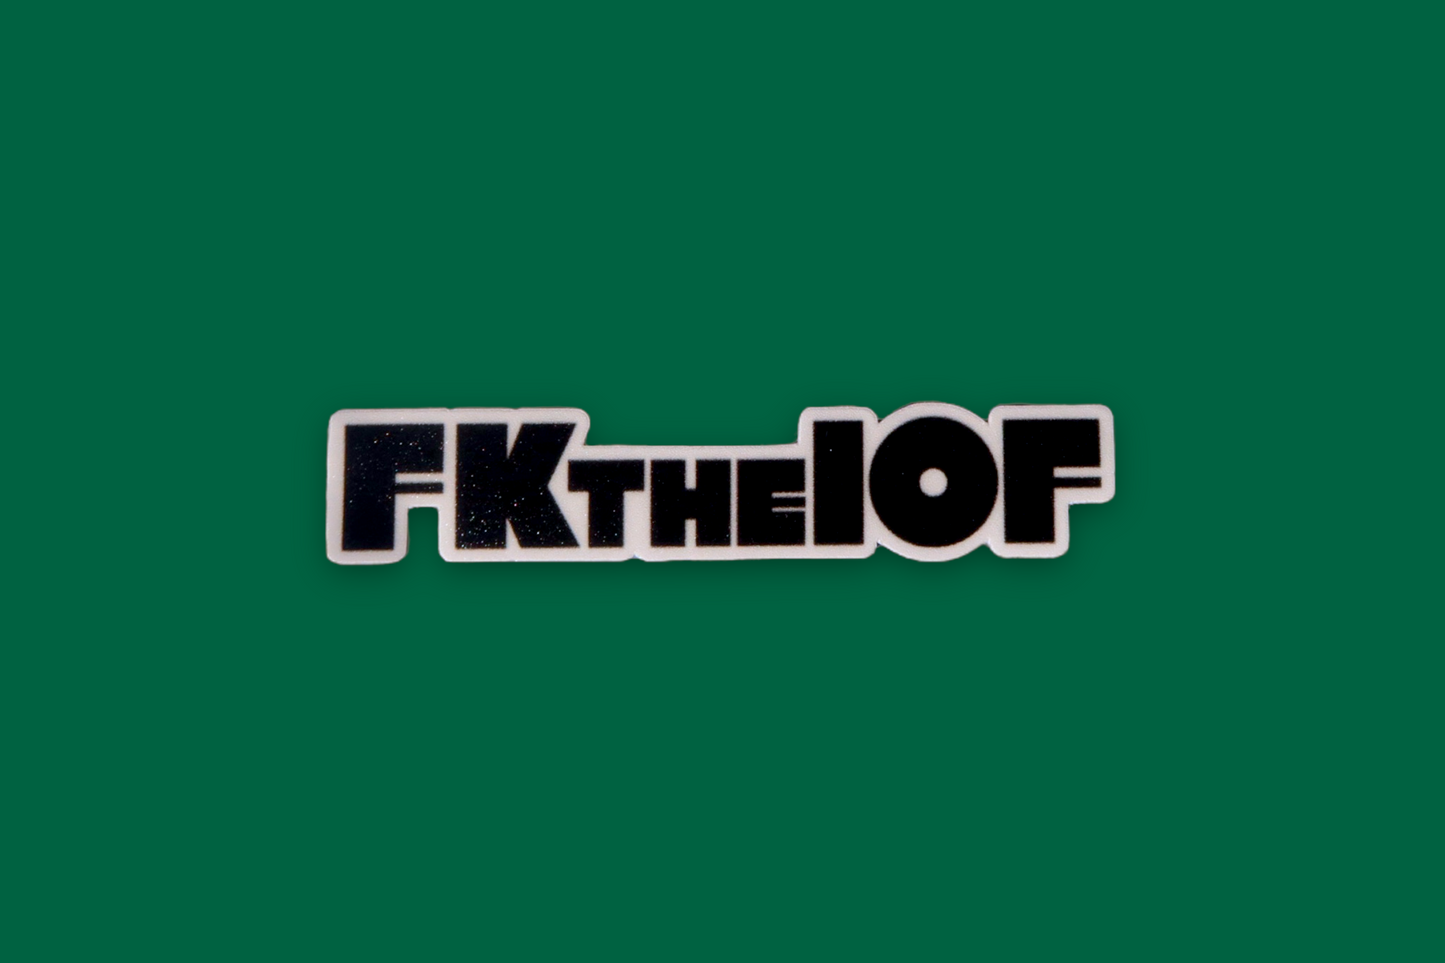 FkTheIOF Sticker